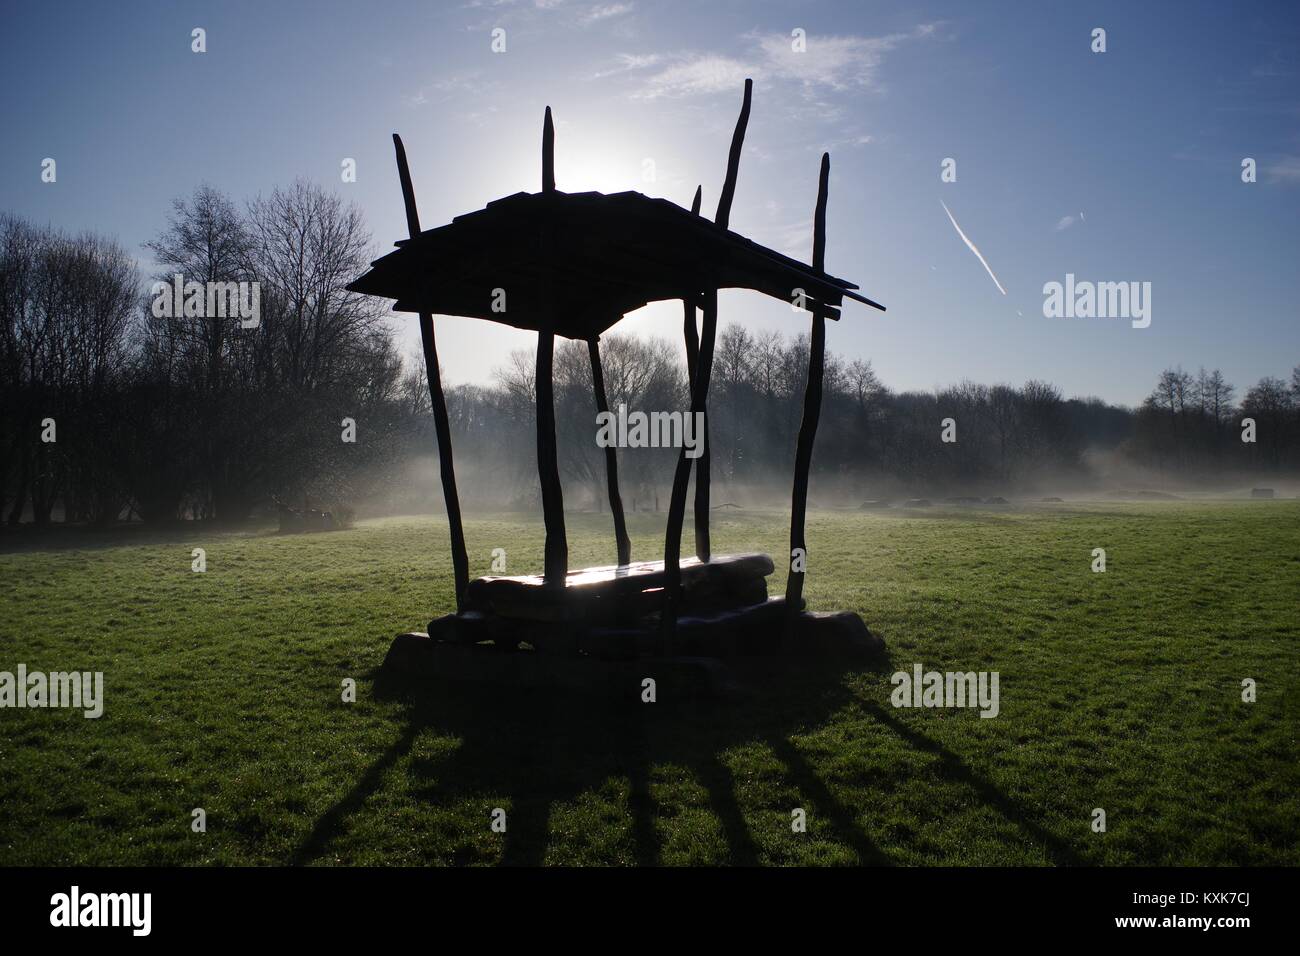 Abri banc rustique en silhouette sur un hivers brumeux matin sur un champ d'herbe par Ludwell Valley Park. Exeter, Devon, UK. Janvier, 2018. Banque D'Images